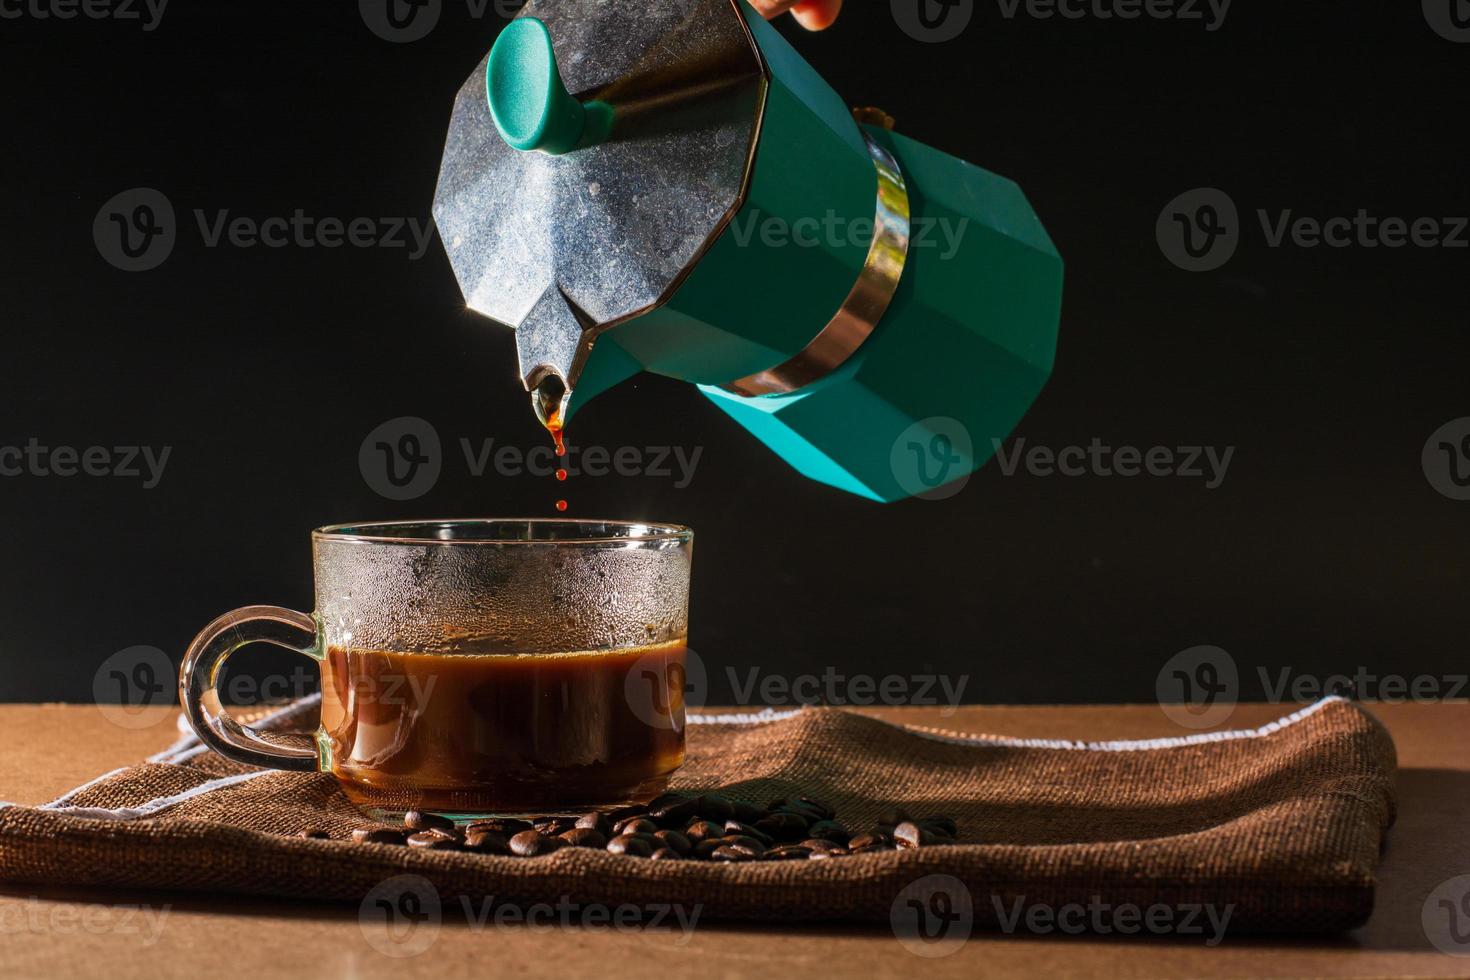 vierta café negro caliente de la cafetera moka verde para limpiar la taza de café con humo y granos de café sobre un mantel marrón y una mesa de madera. beneficio del concepto de café. foto